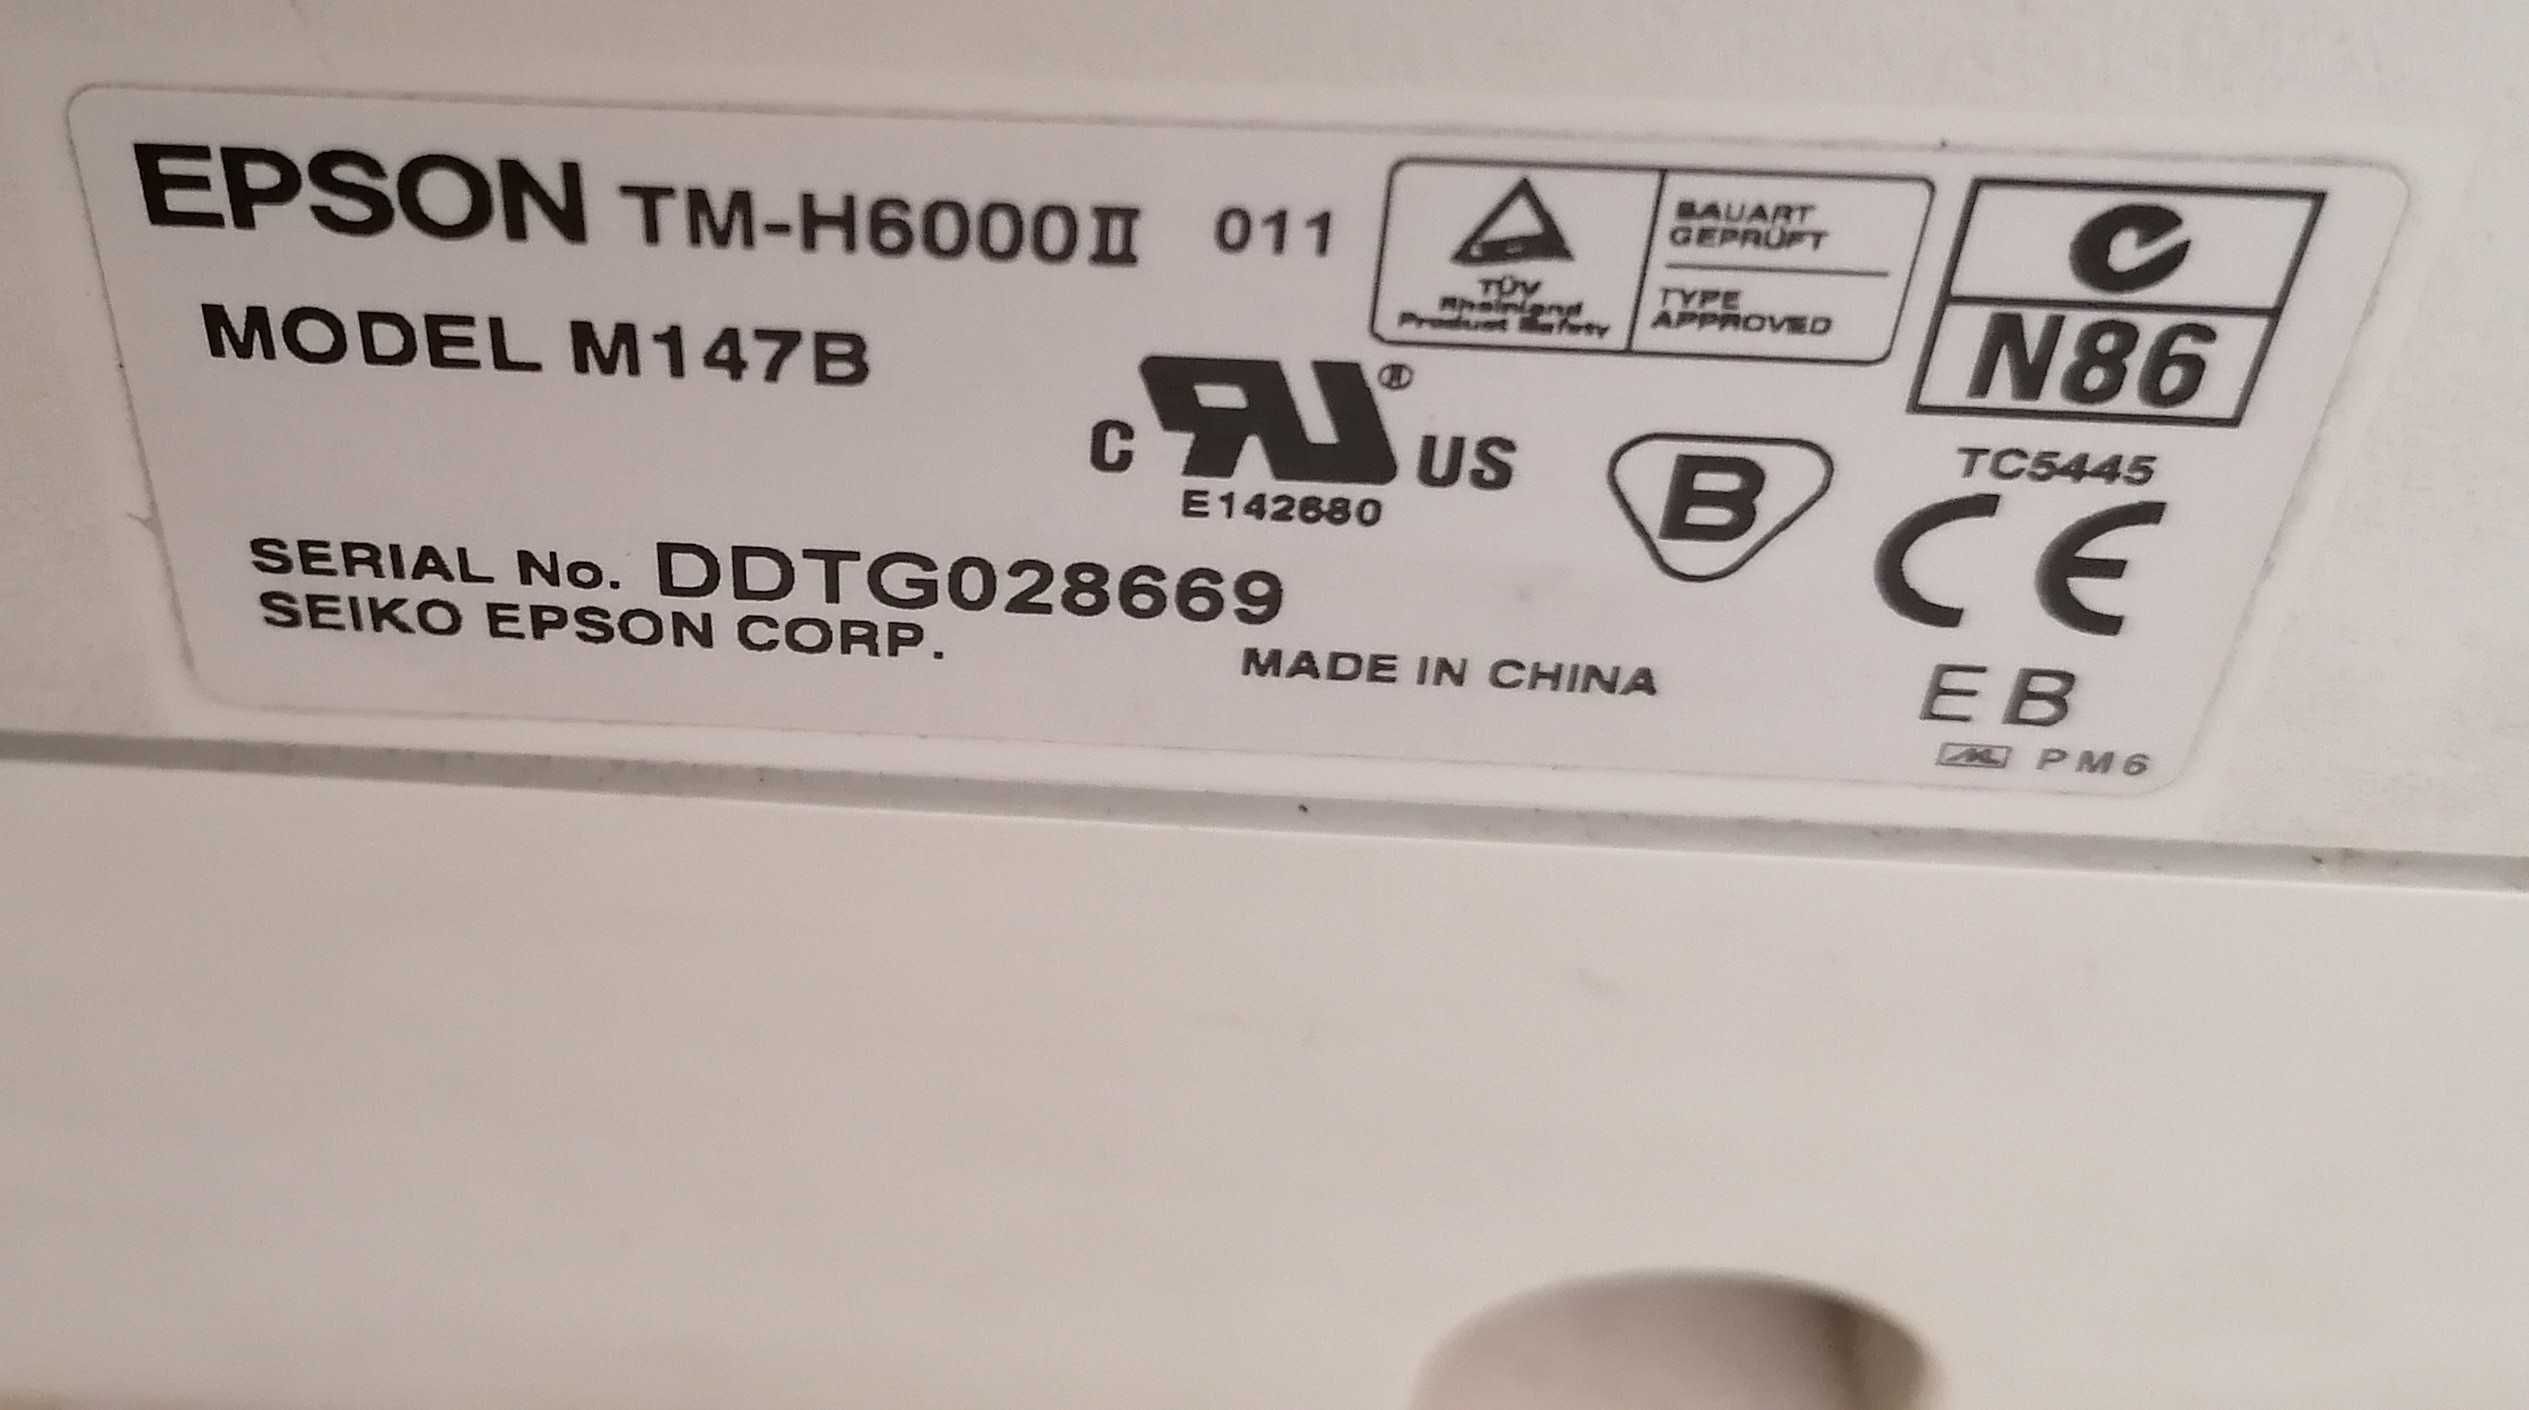 Vendo impressora para POS - EPSON TM-H6000II com scanner de imagem